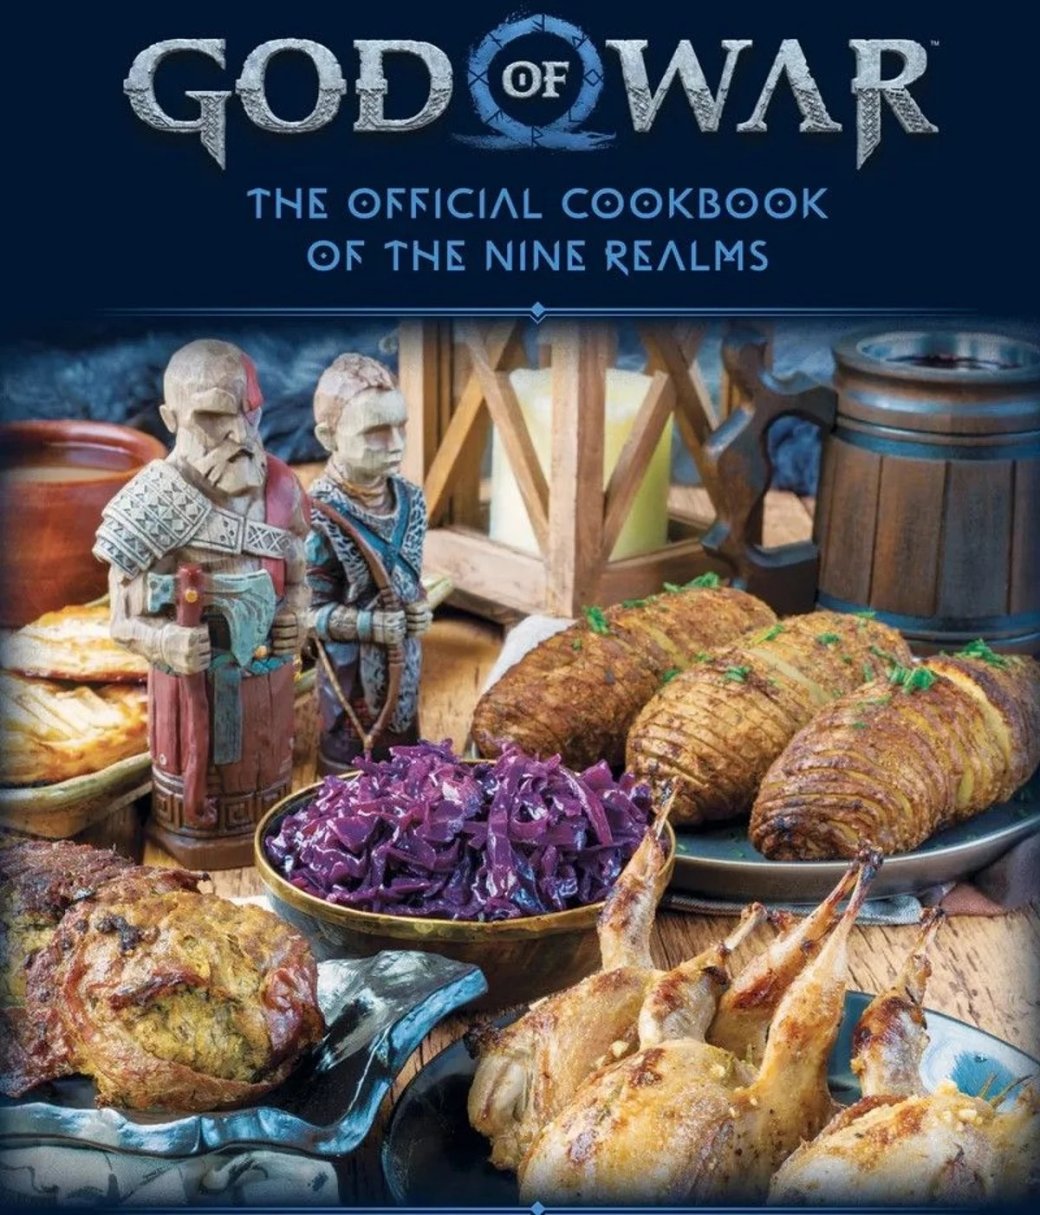 Галерея Серия God of War получила собственную кулинарную книгу - 3 фото